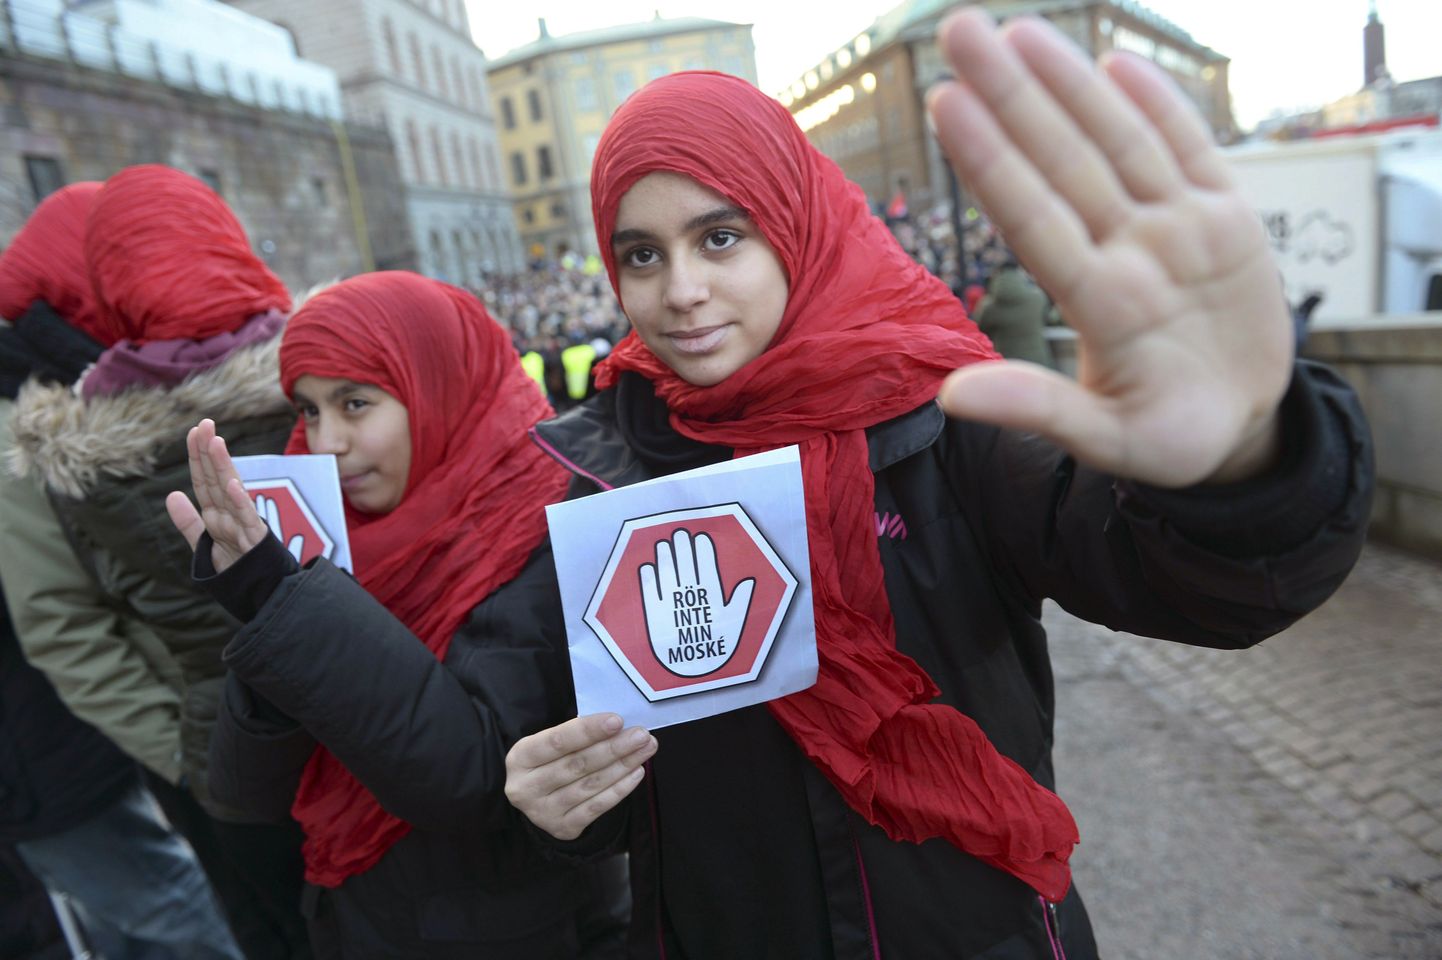 Rootsi noored moslemitüdrukud meeleavaldusel, millega paluti lõpetada mošeerünnakud.